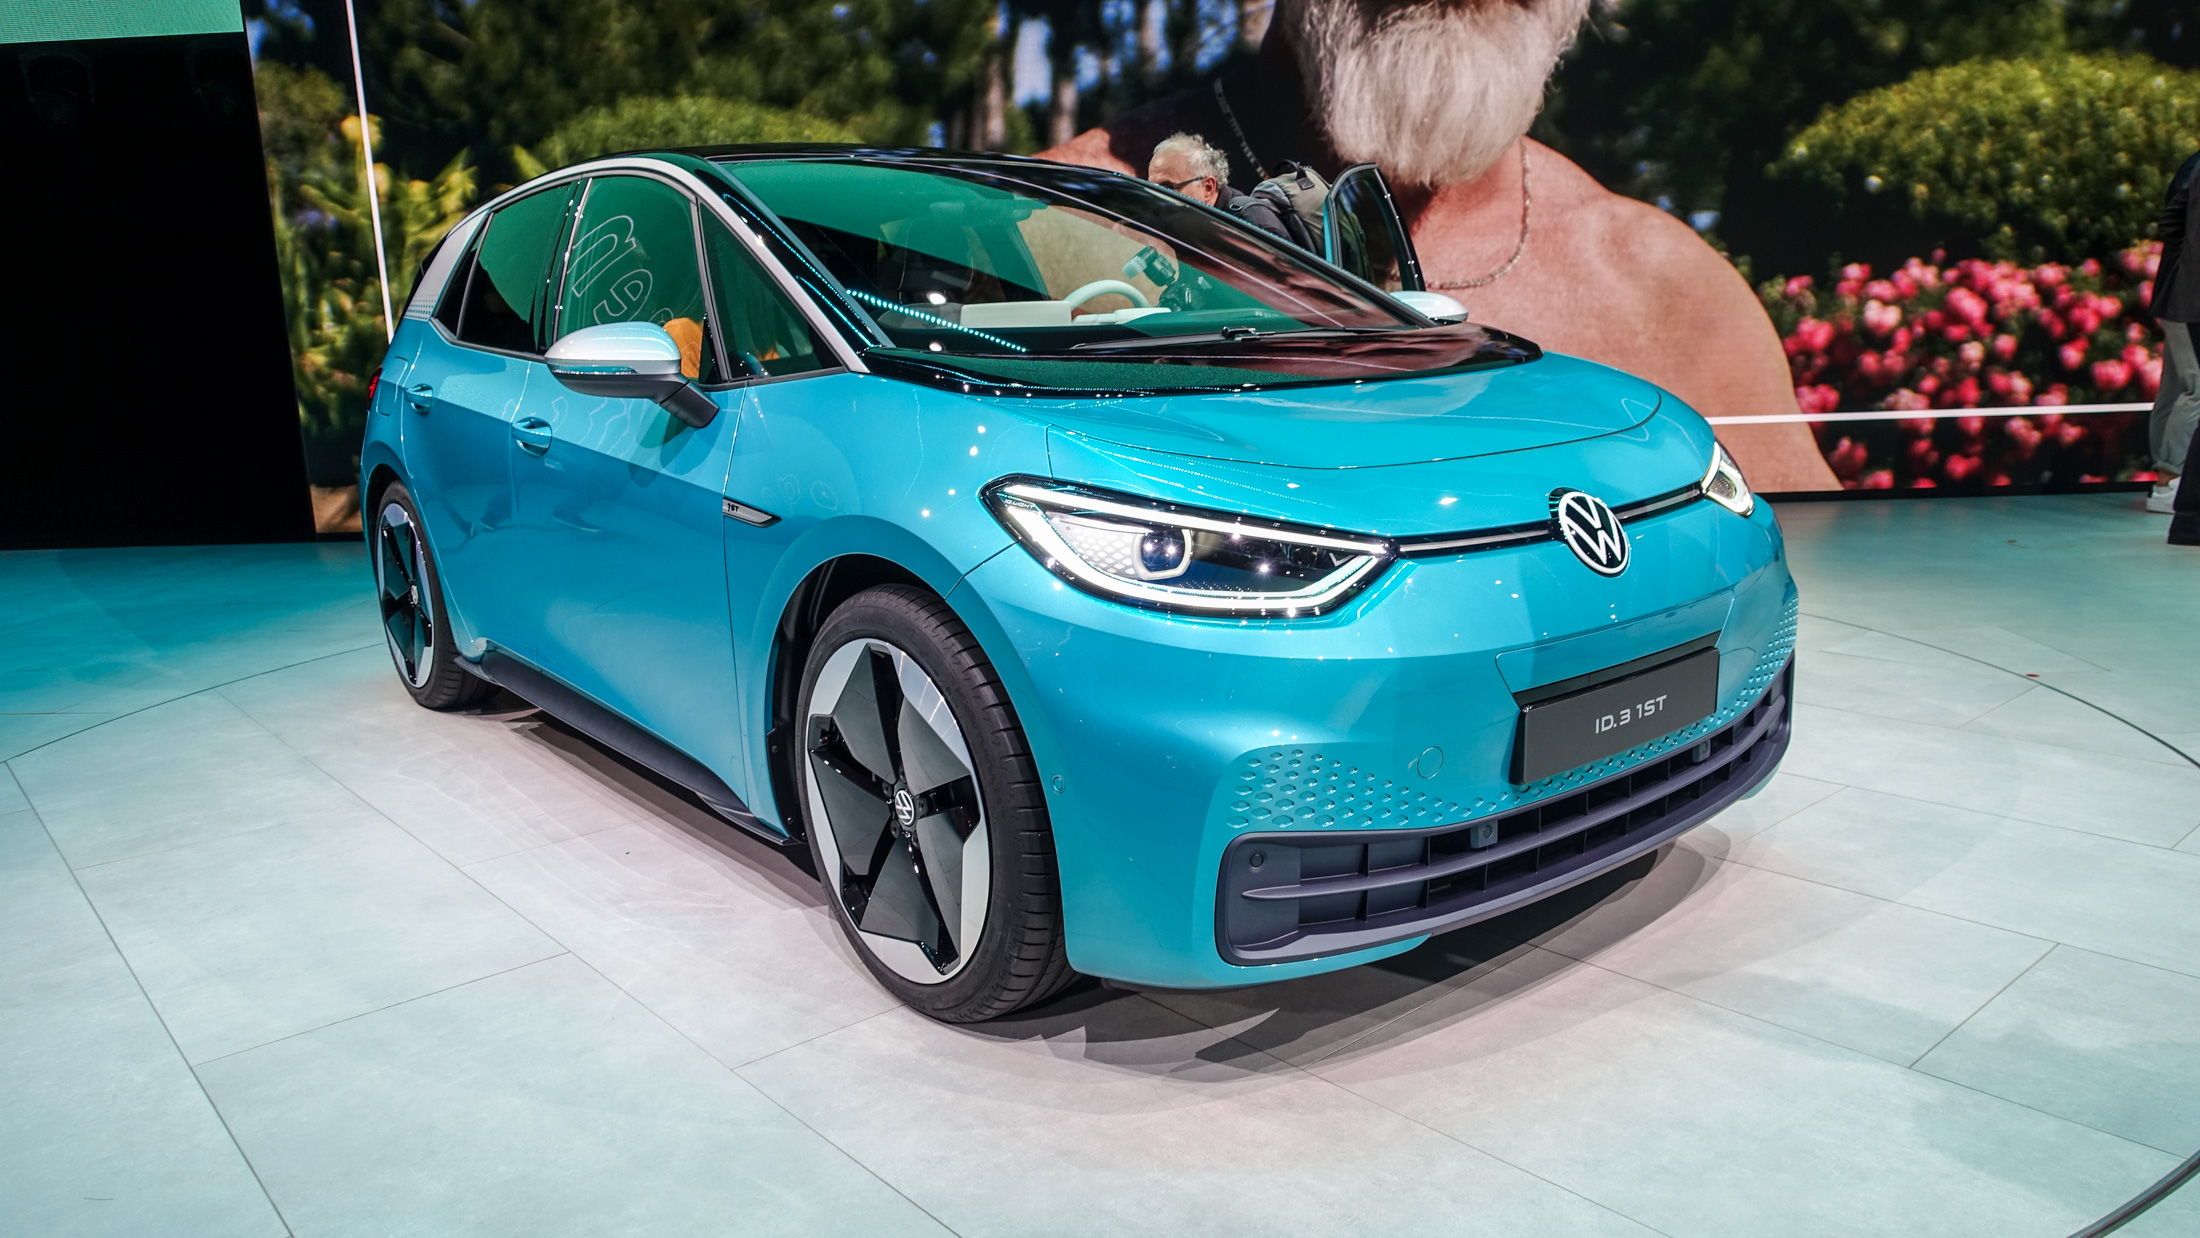 Volkswagen : une augmentation des ventes de voitures électriques de près de 200% en 2020